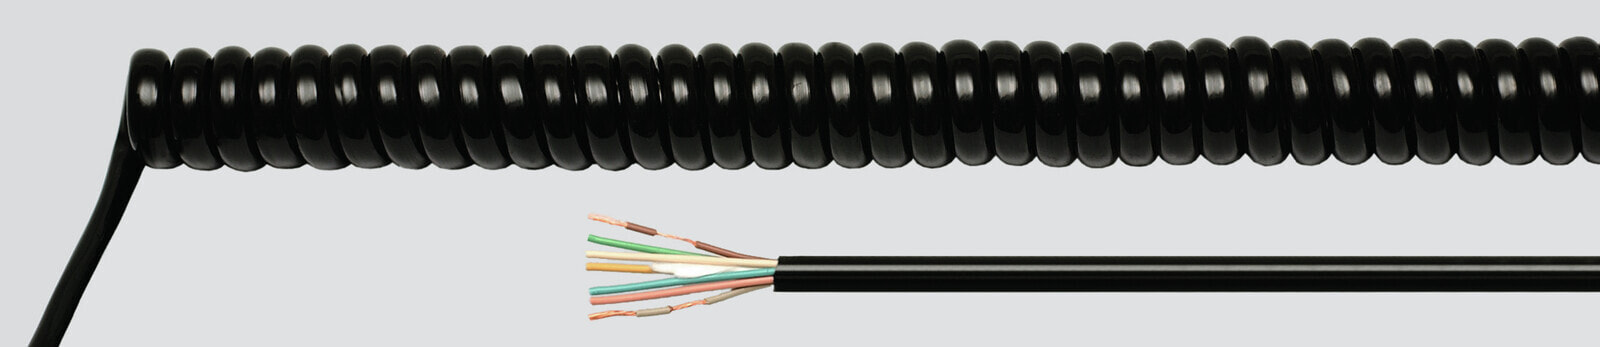 Helukabel 86356 - Low voltage cable - Black - Cooper - 0.75 mm² - 518.4 kg/km - -25 - 70 °C